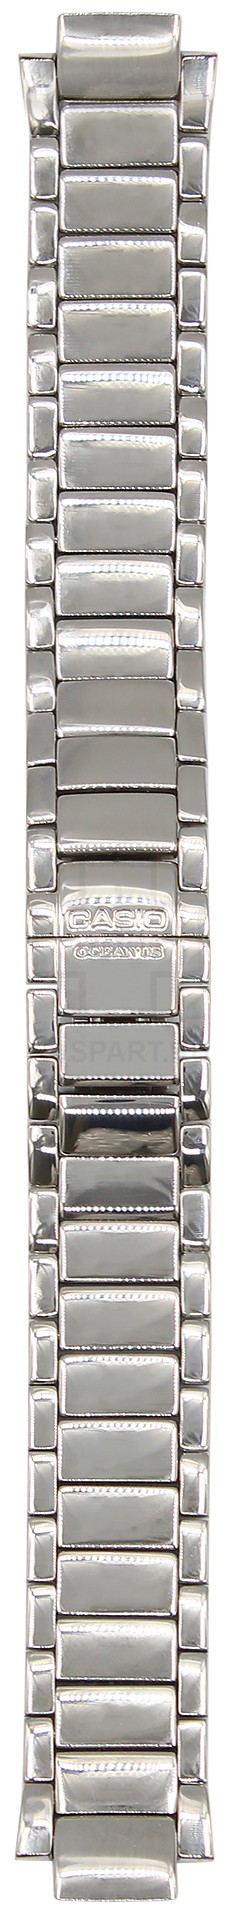 Браслет наручных часов металлический Casio OCL-100D-2AV